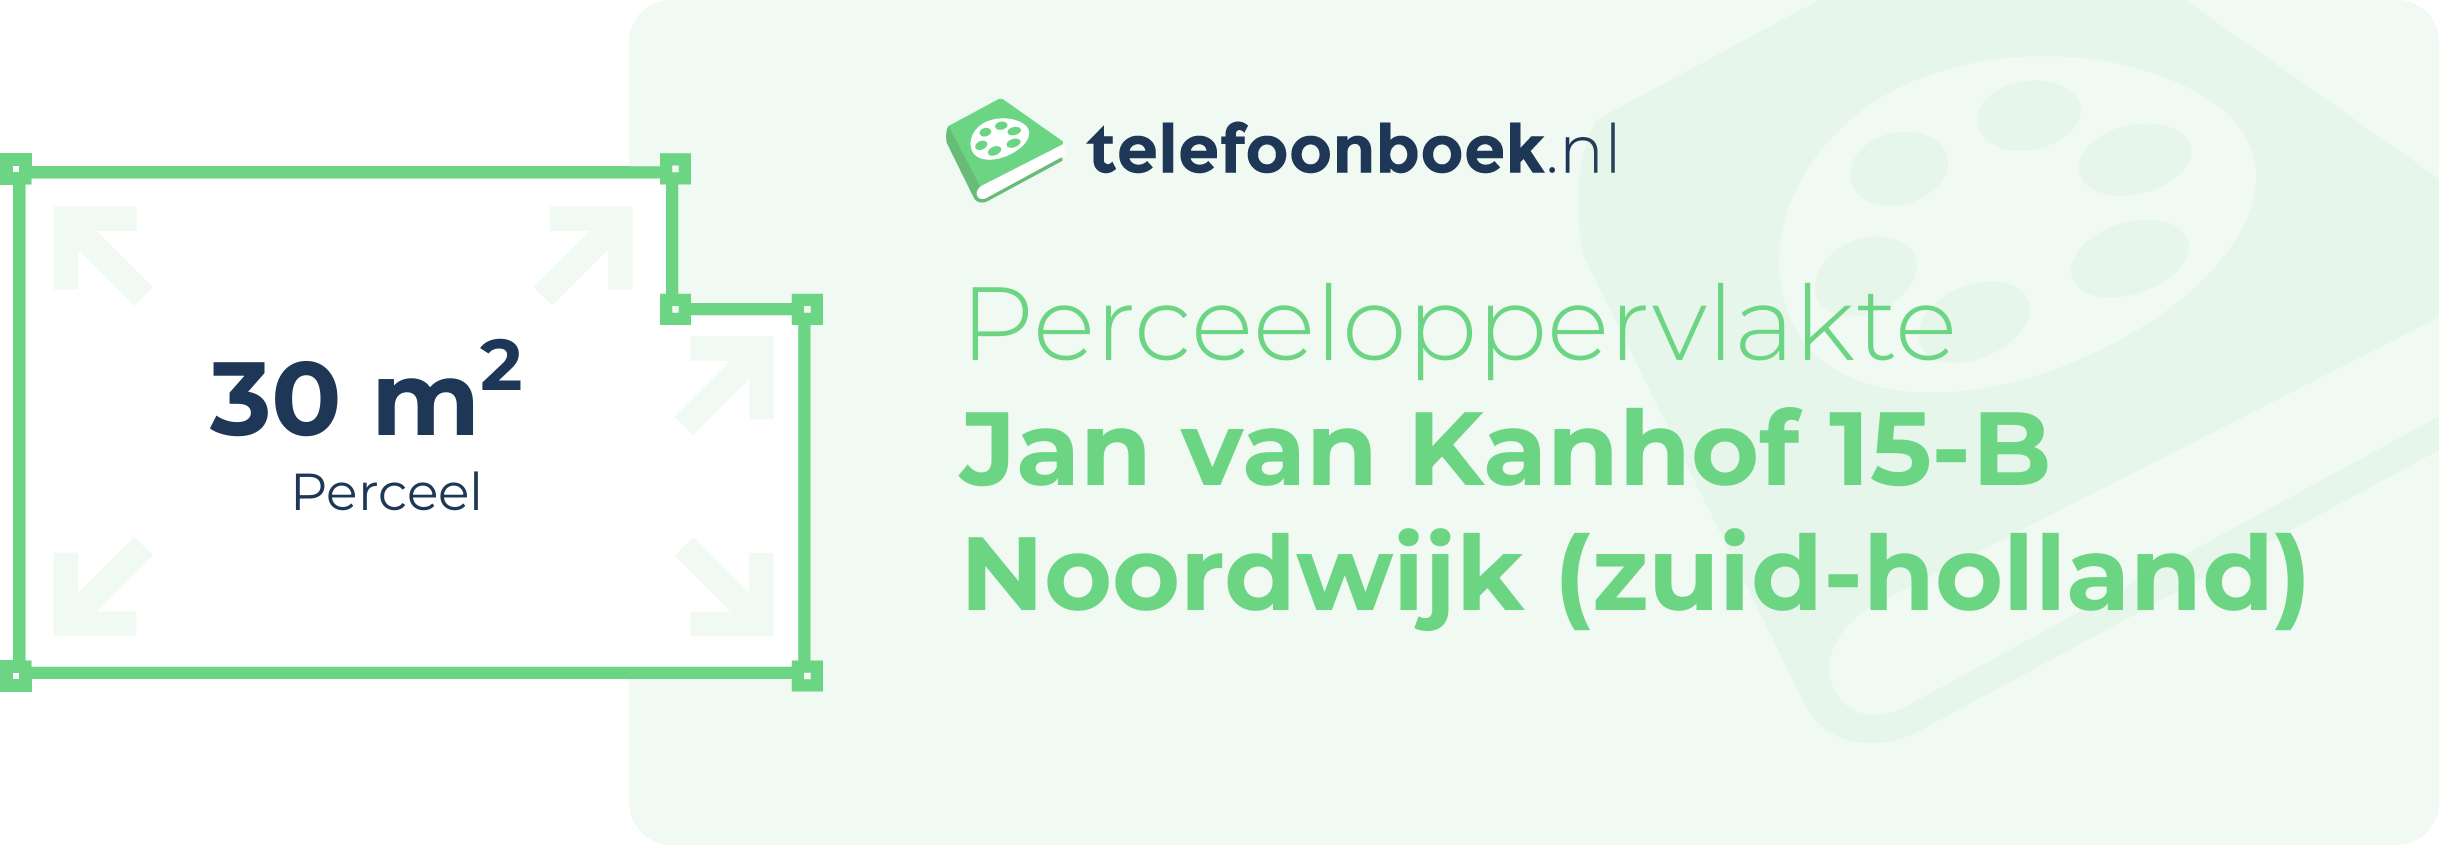 Perceeloppervlakte Jan Van Kanhof 15-B Noordwijk (Zuid-Holland)